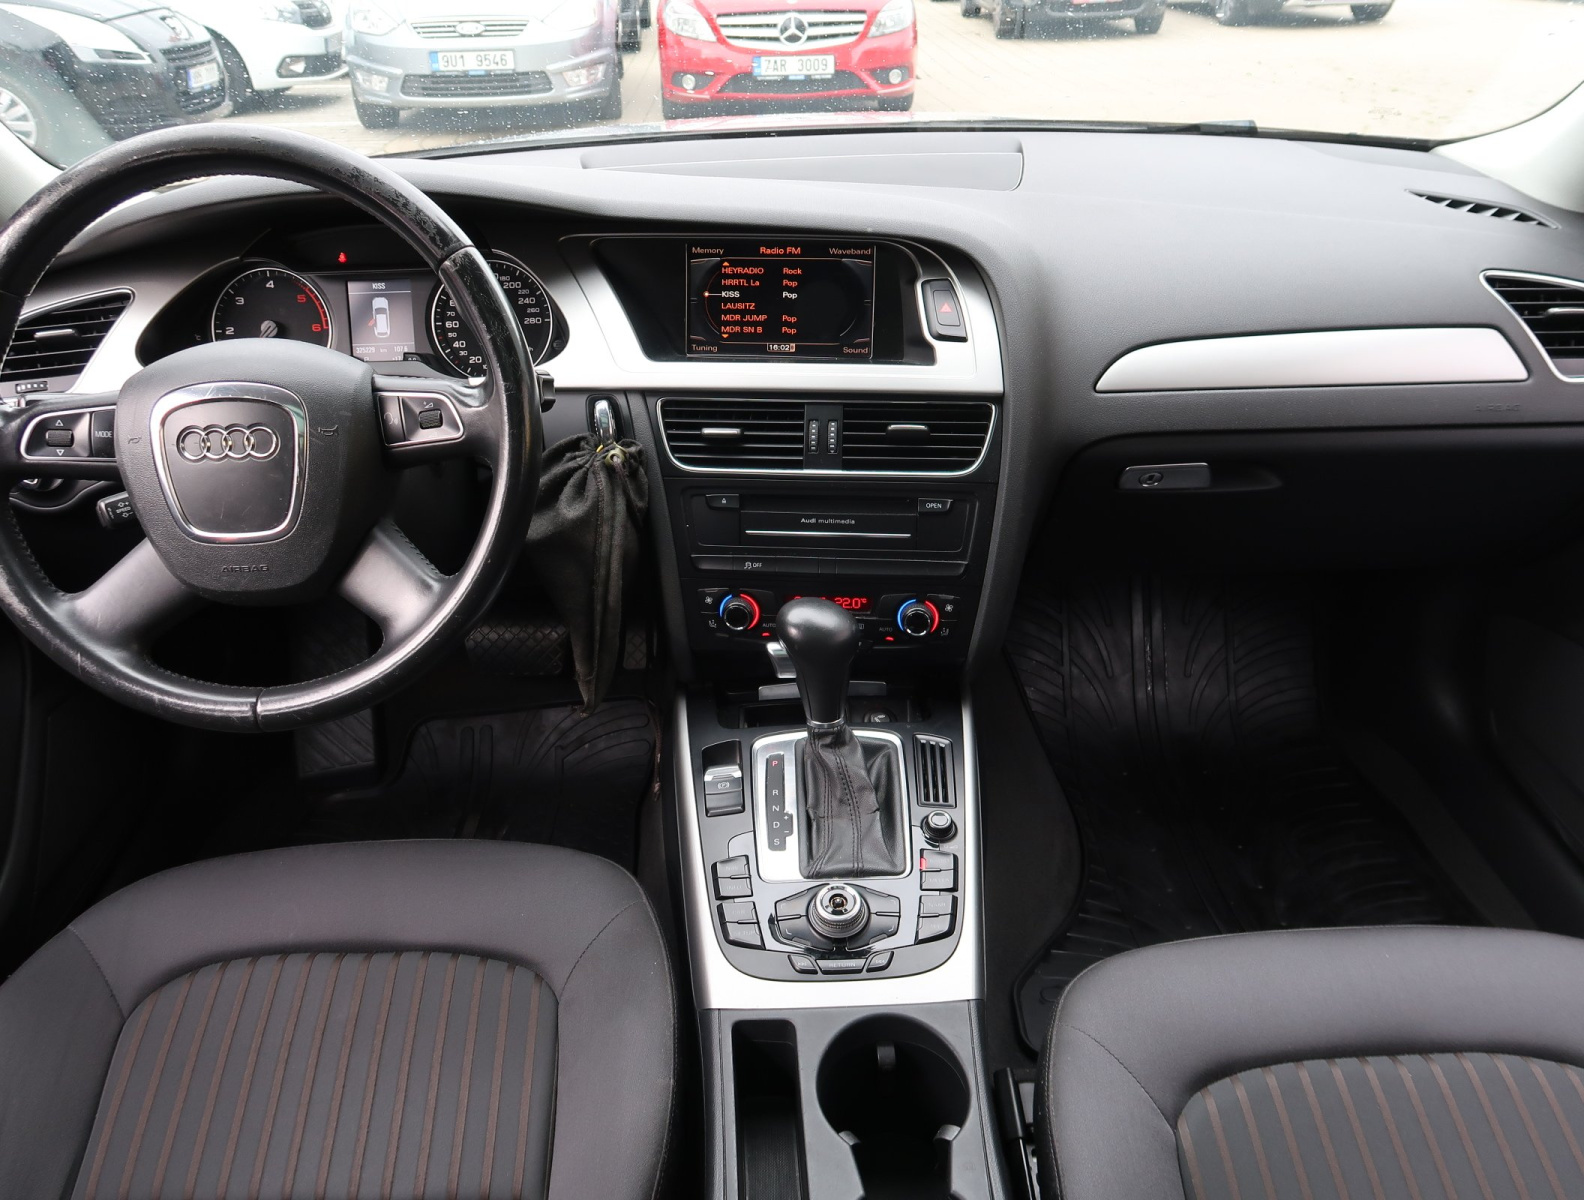 Audi A4, 2011, 2.0 TDI, 105kW